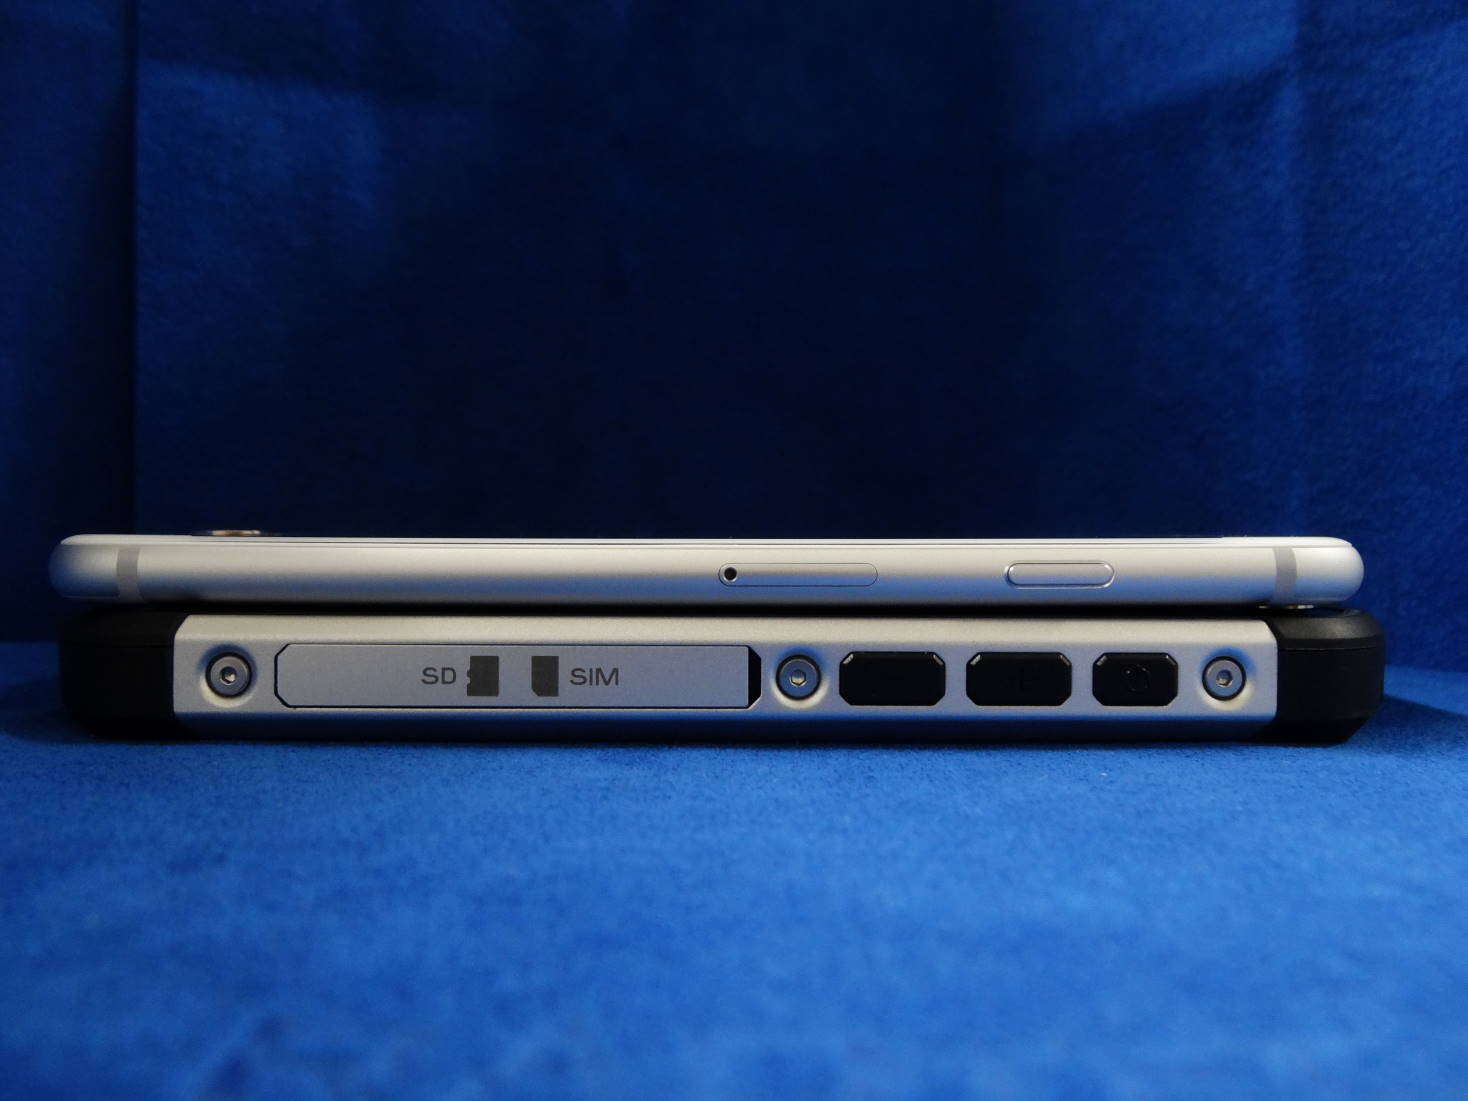 CAT S40 Smartphone と iPhone 6 縦幅比較